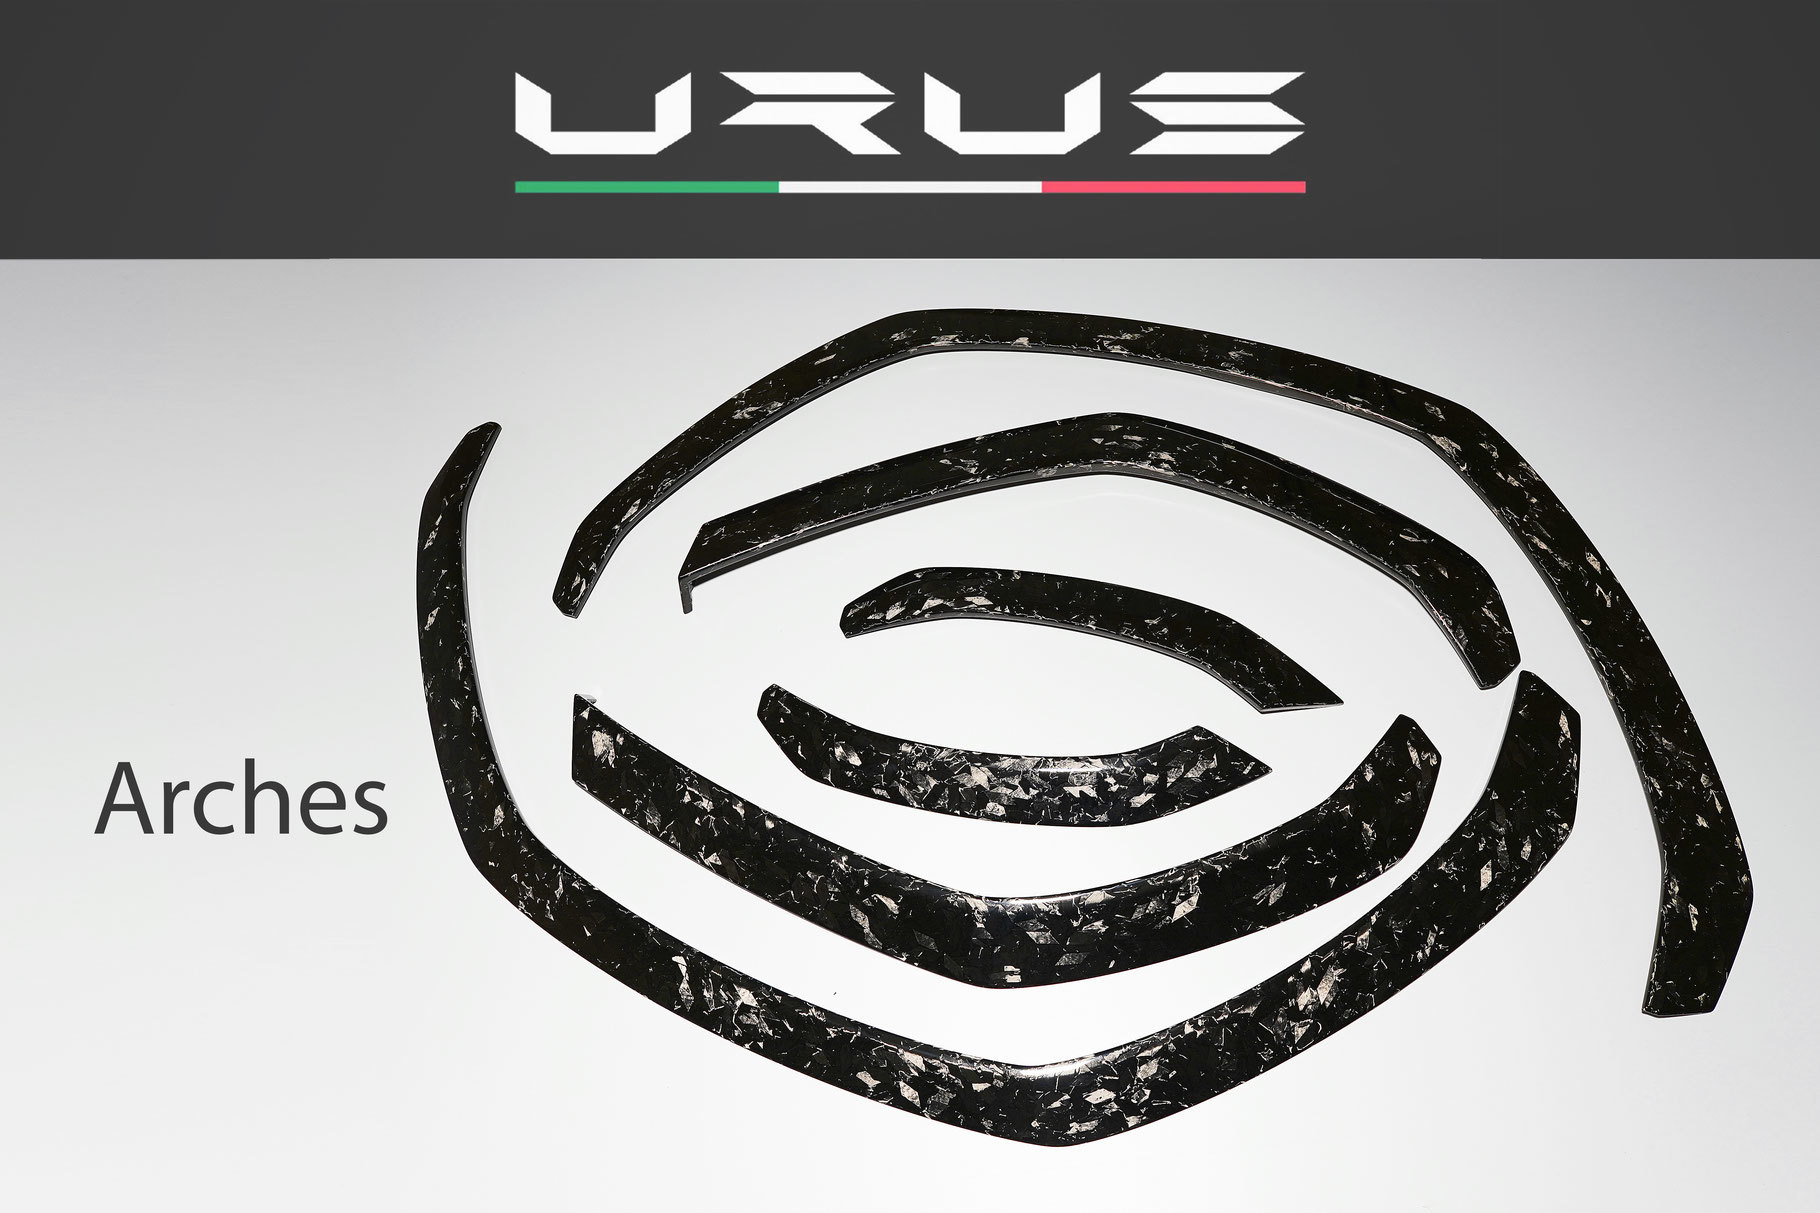 Hodoor Performance Carbon fiber arches for Lamborghini Urus